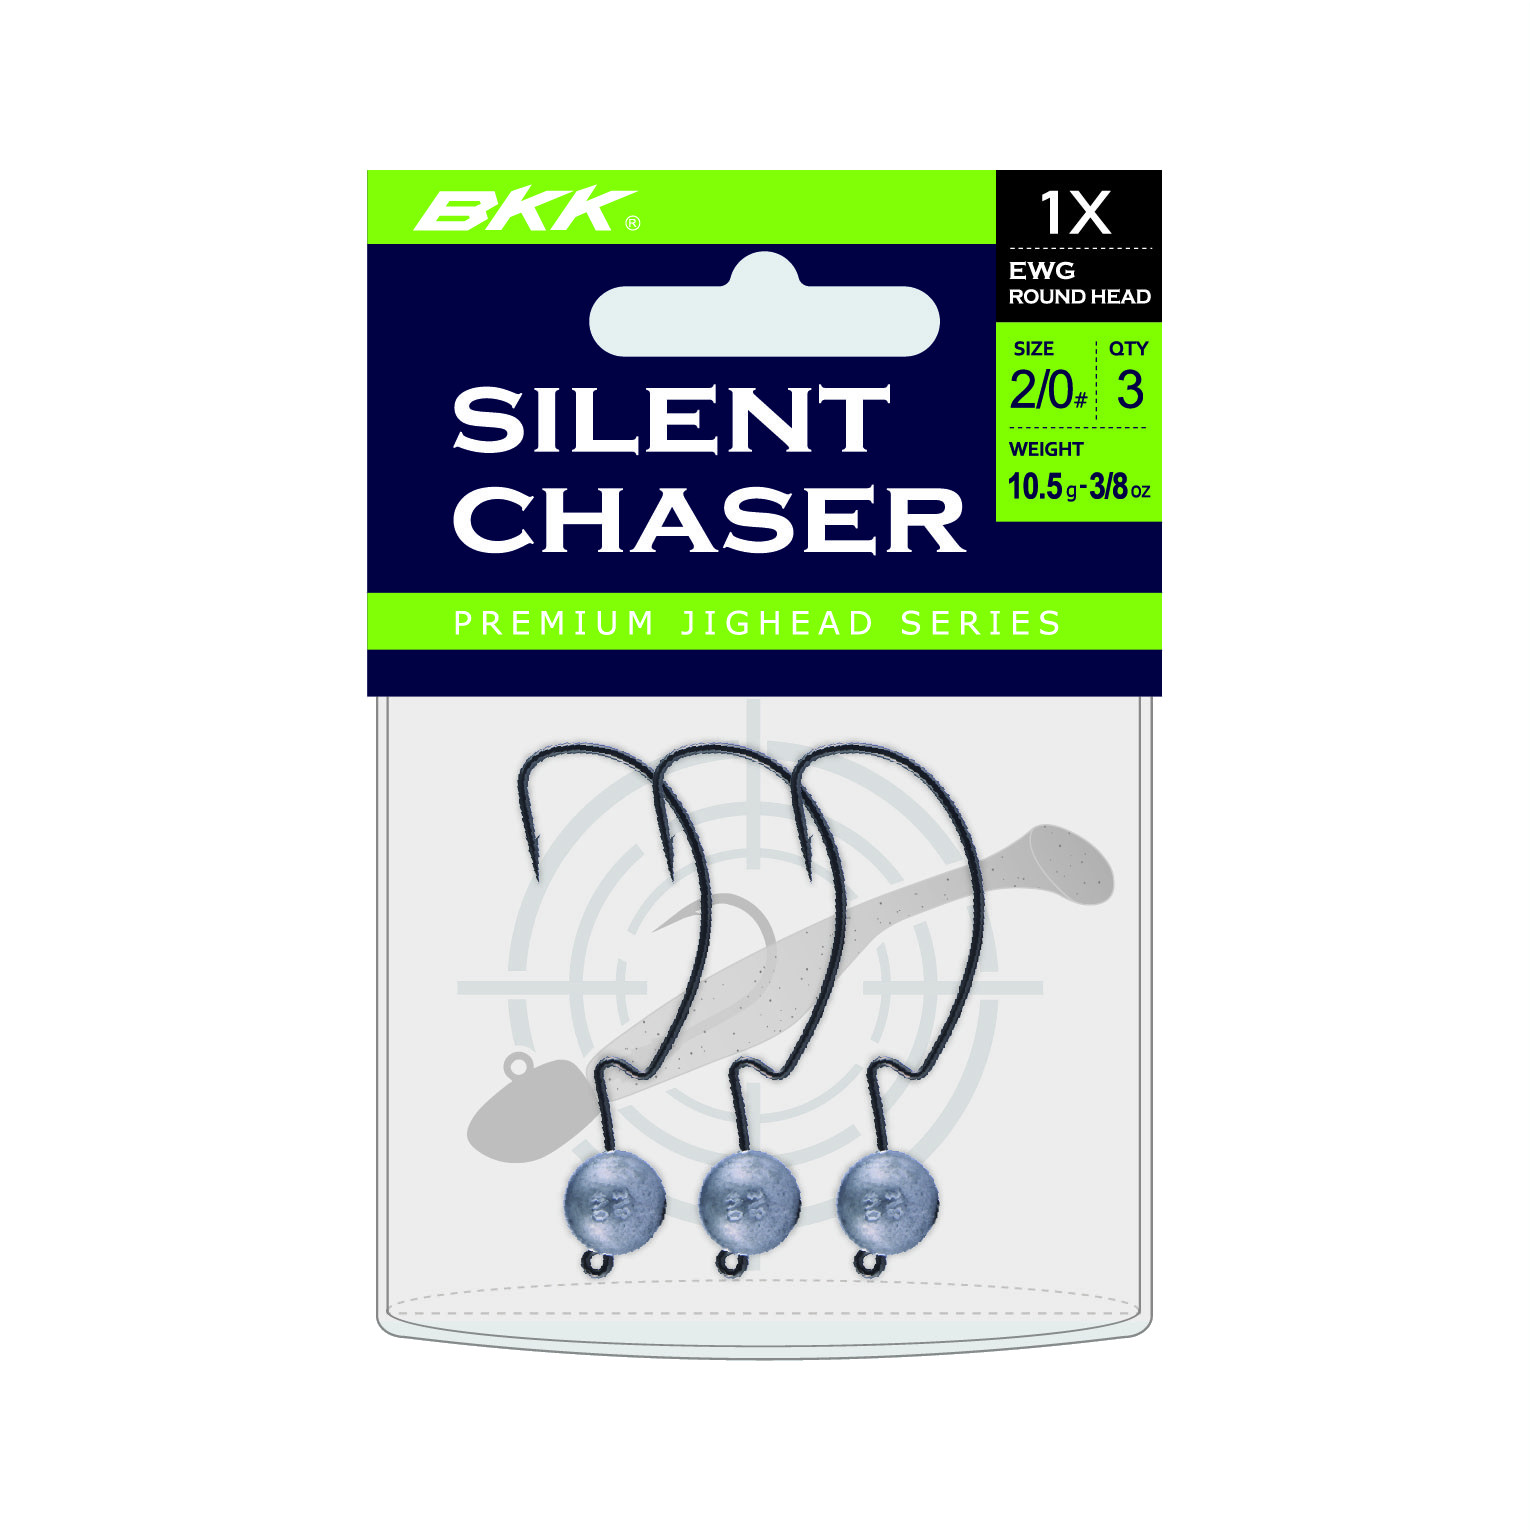 BKK Silent Chaser 1X EWG Round Head Bleikopf #1/0